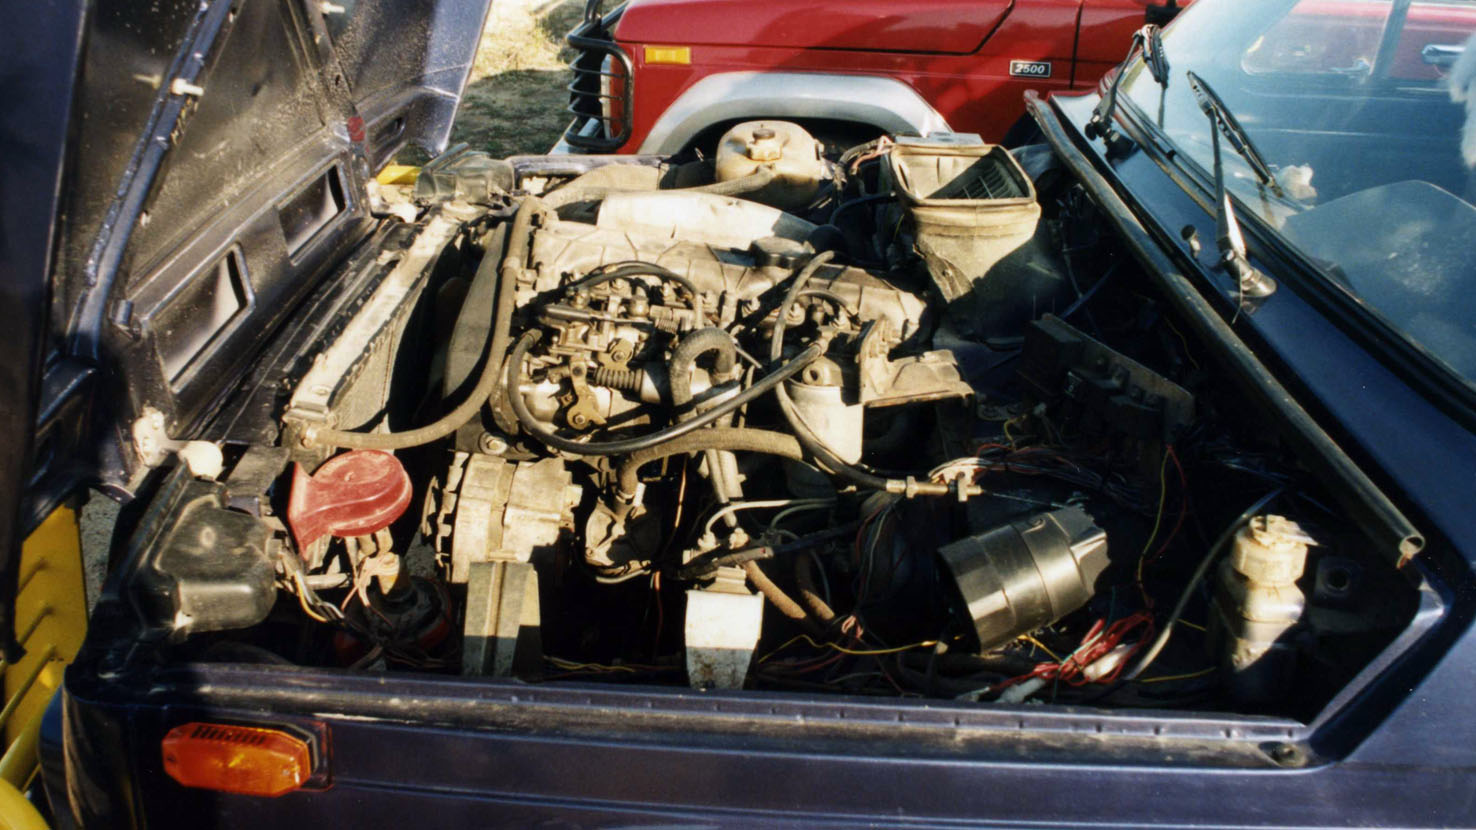 Motor diésel del Renault 21 acoplado a un Lada Niva de gasolina.